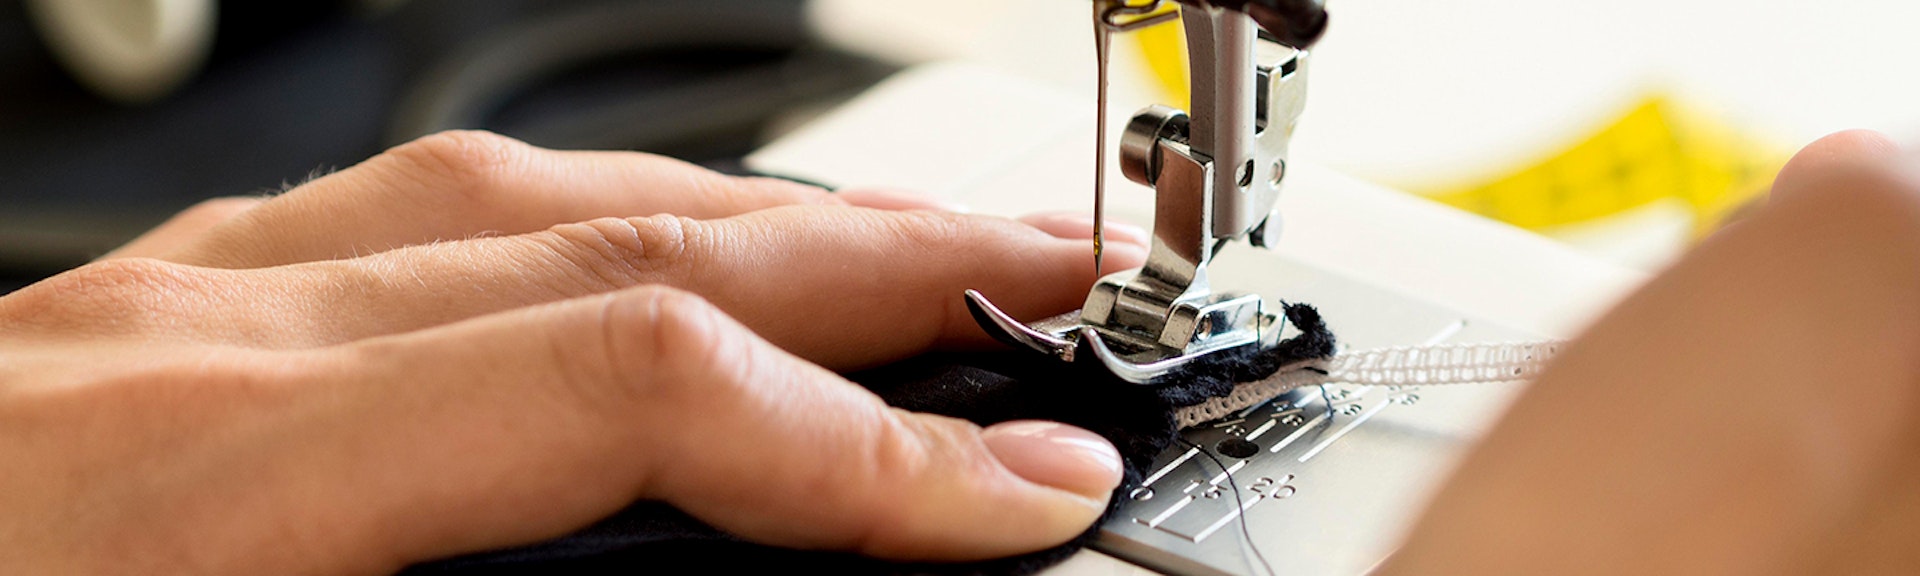 ¿Qué es innovación en corte y confección? Lo último de la industria textil